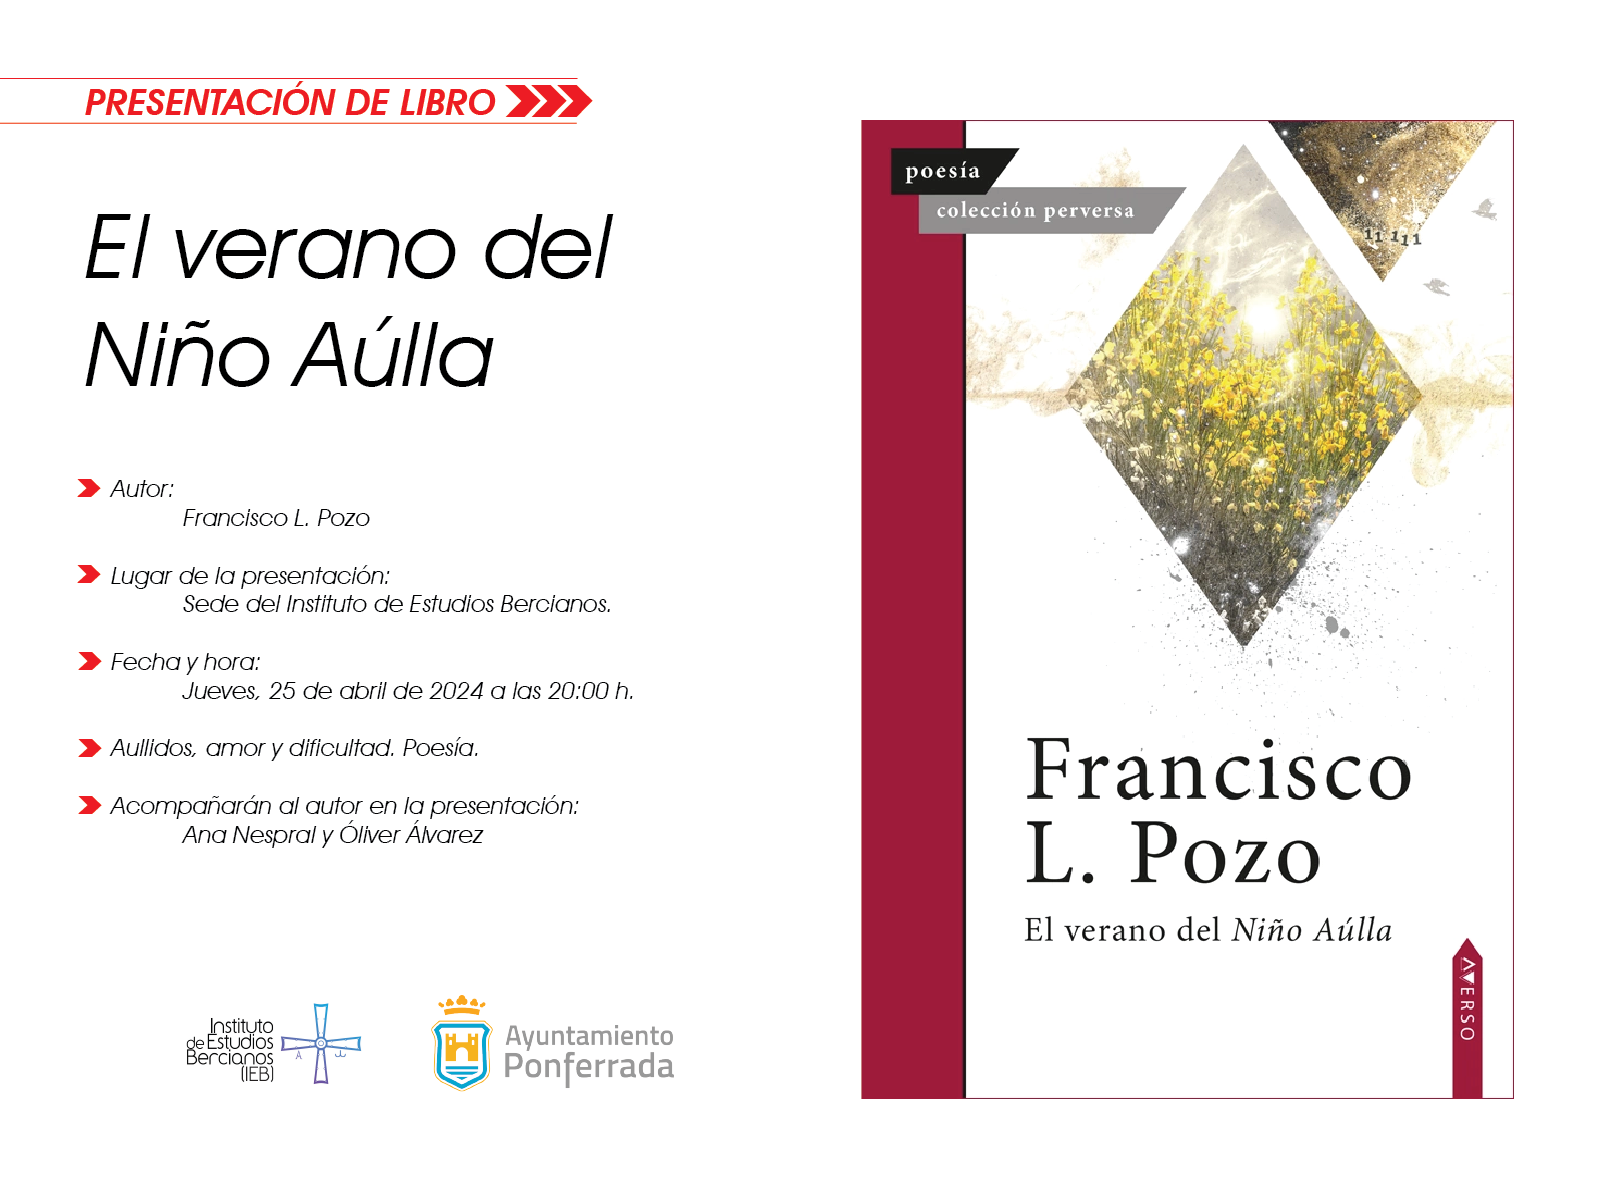 Presentación del libro de Francisco L. Pozo "El verano del Niño Aúlla" en la sede del IEB 1